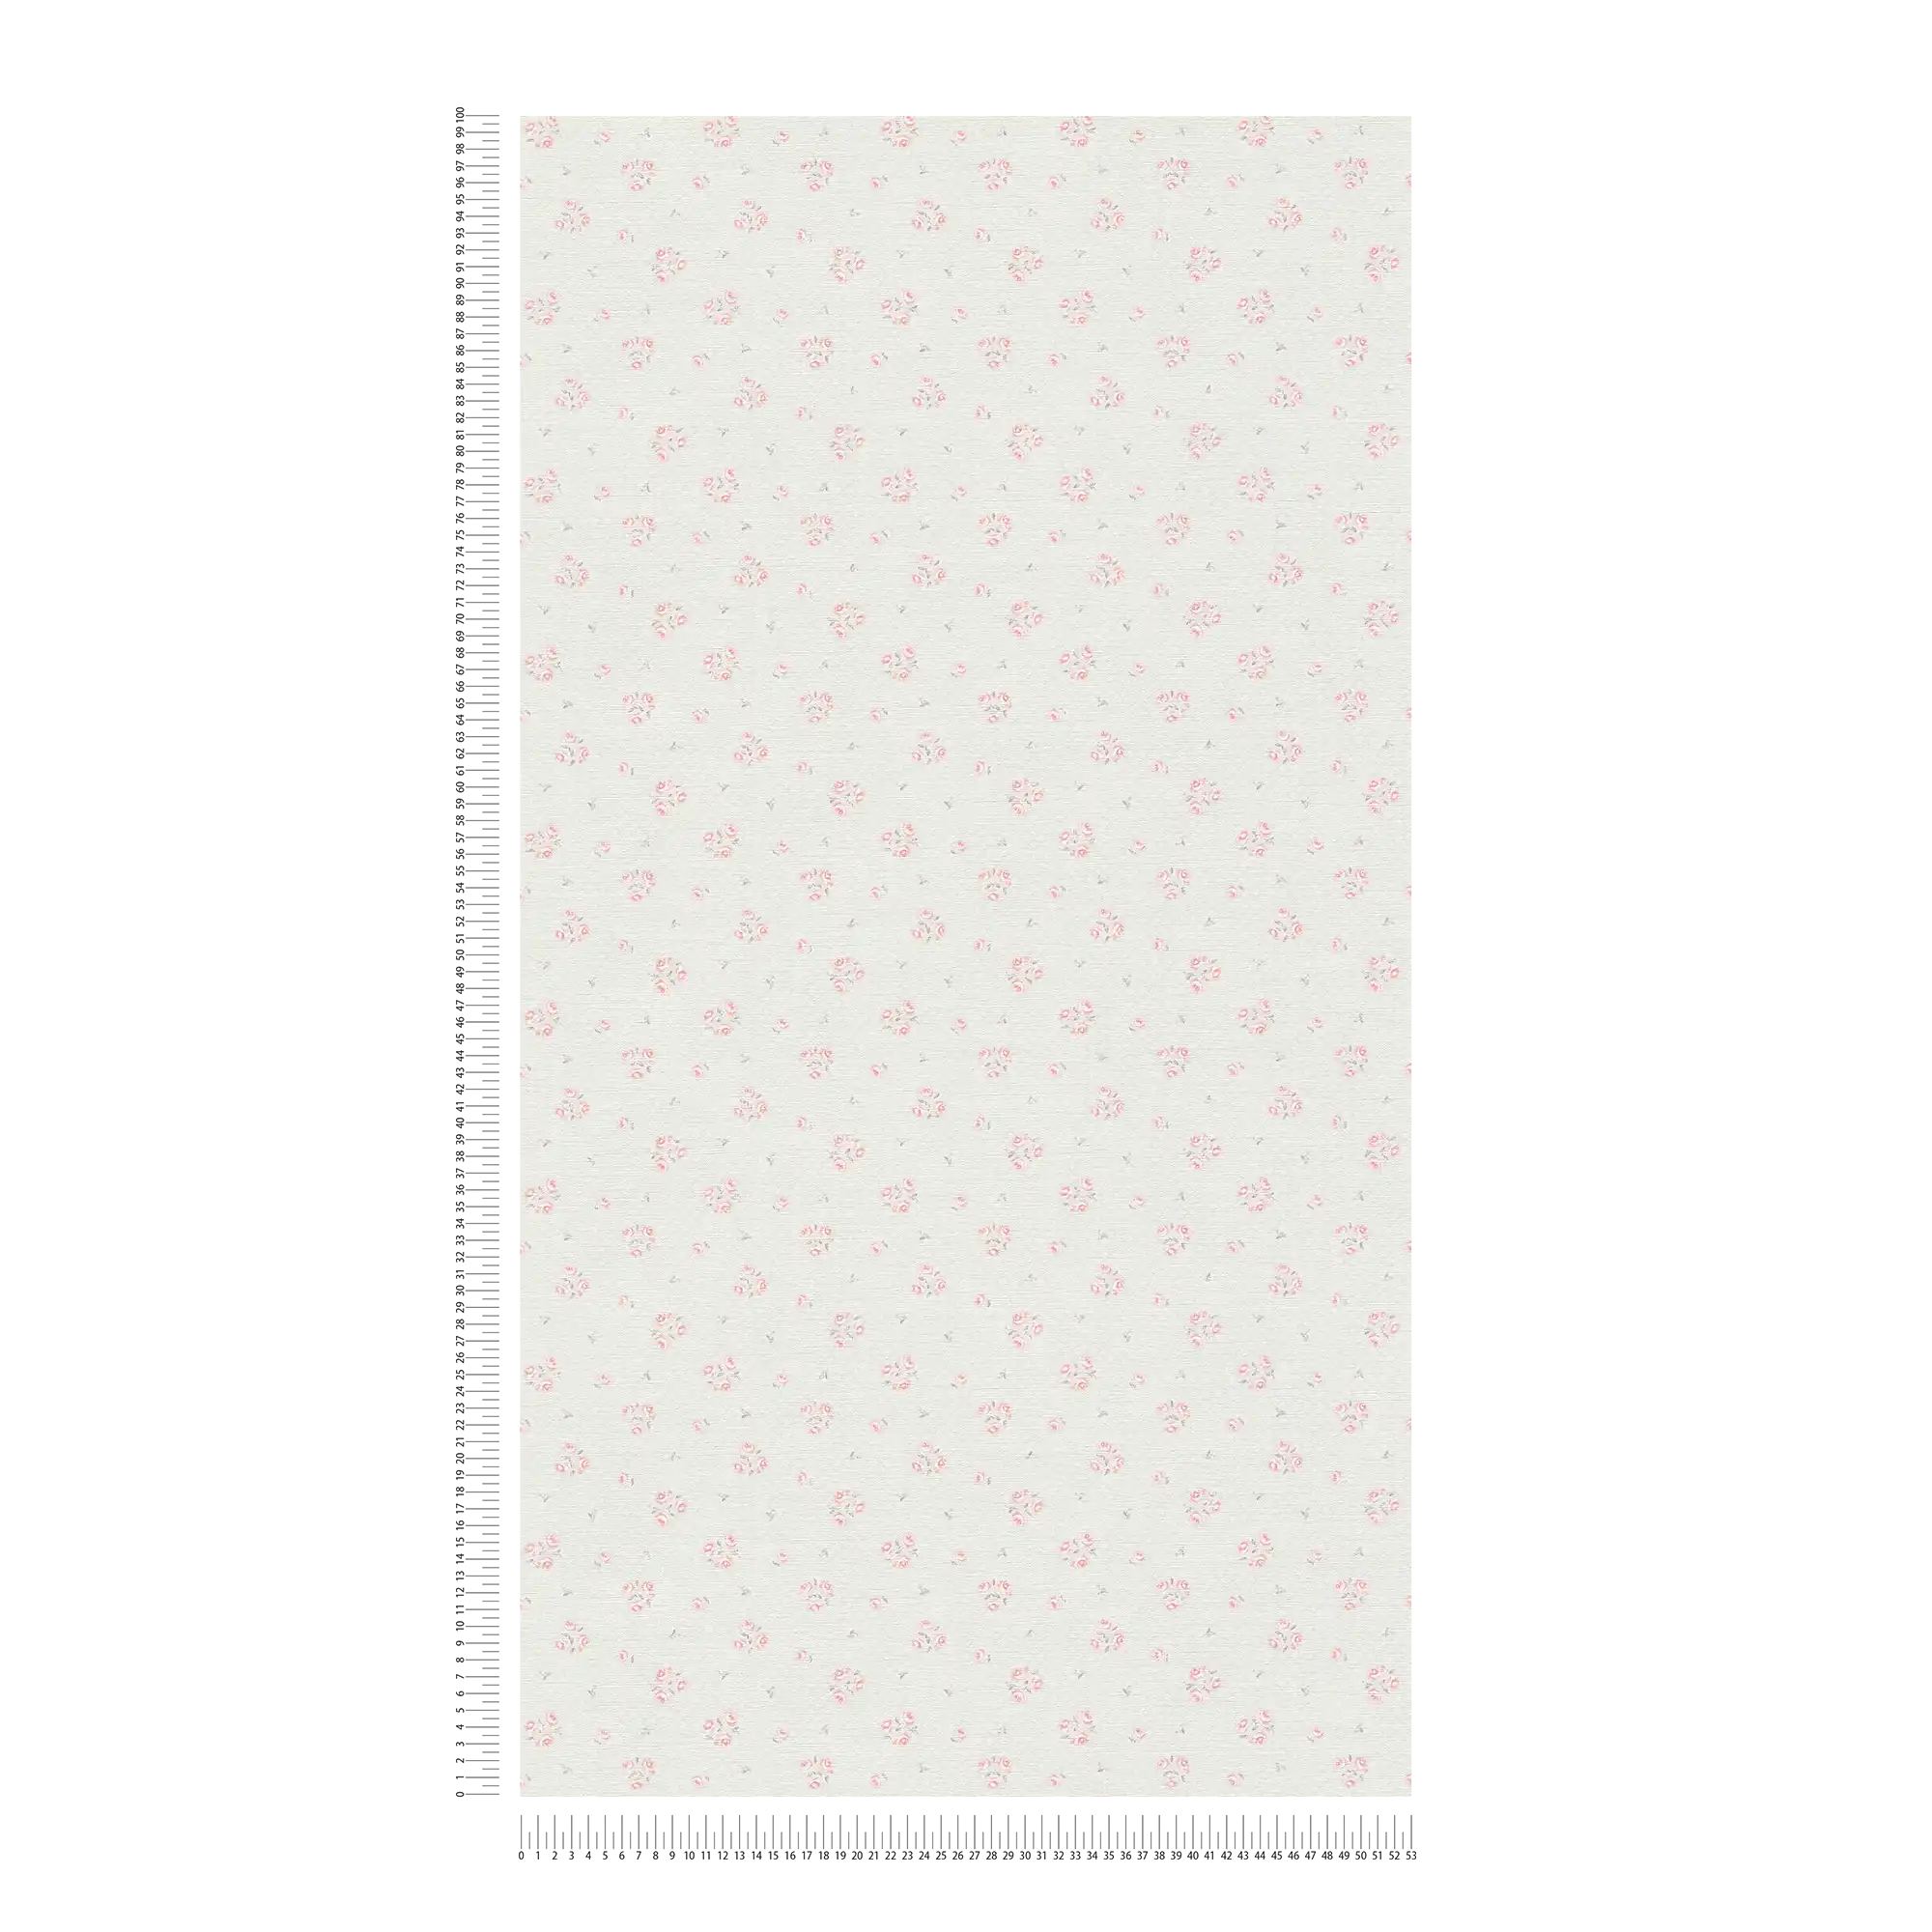             Carta da parati in tessuto non tessuto con raffinato motivo floreale Shabby Chic - grigio chiaro, rosso, bianco
        